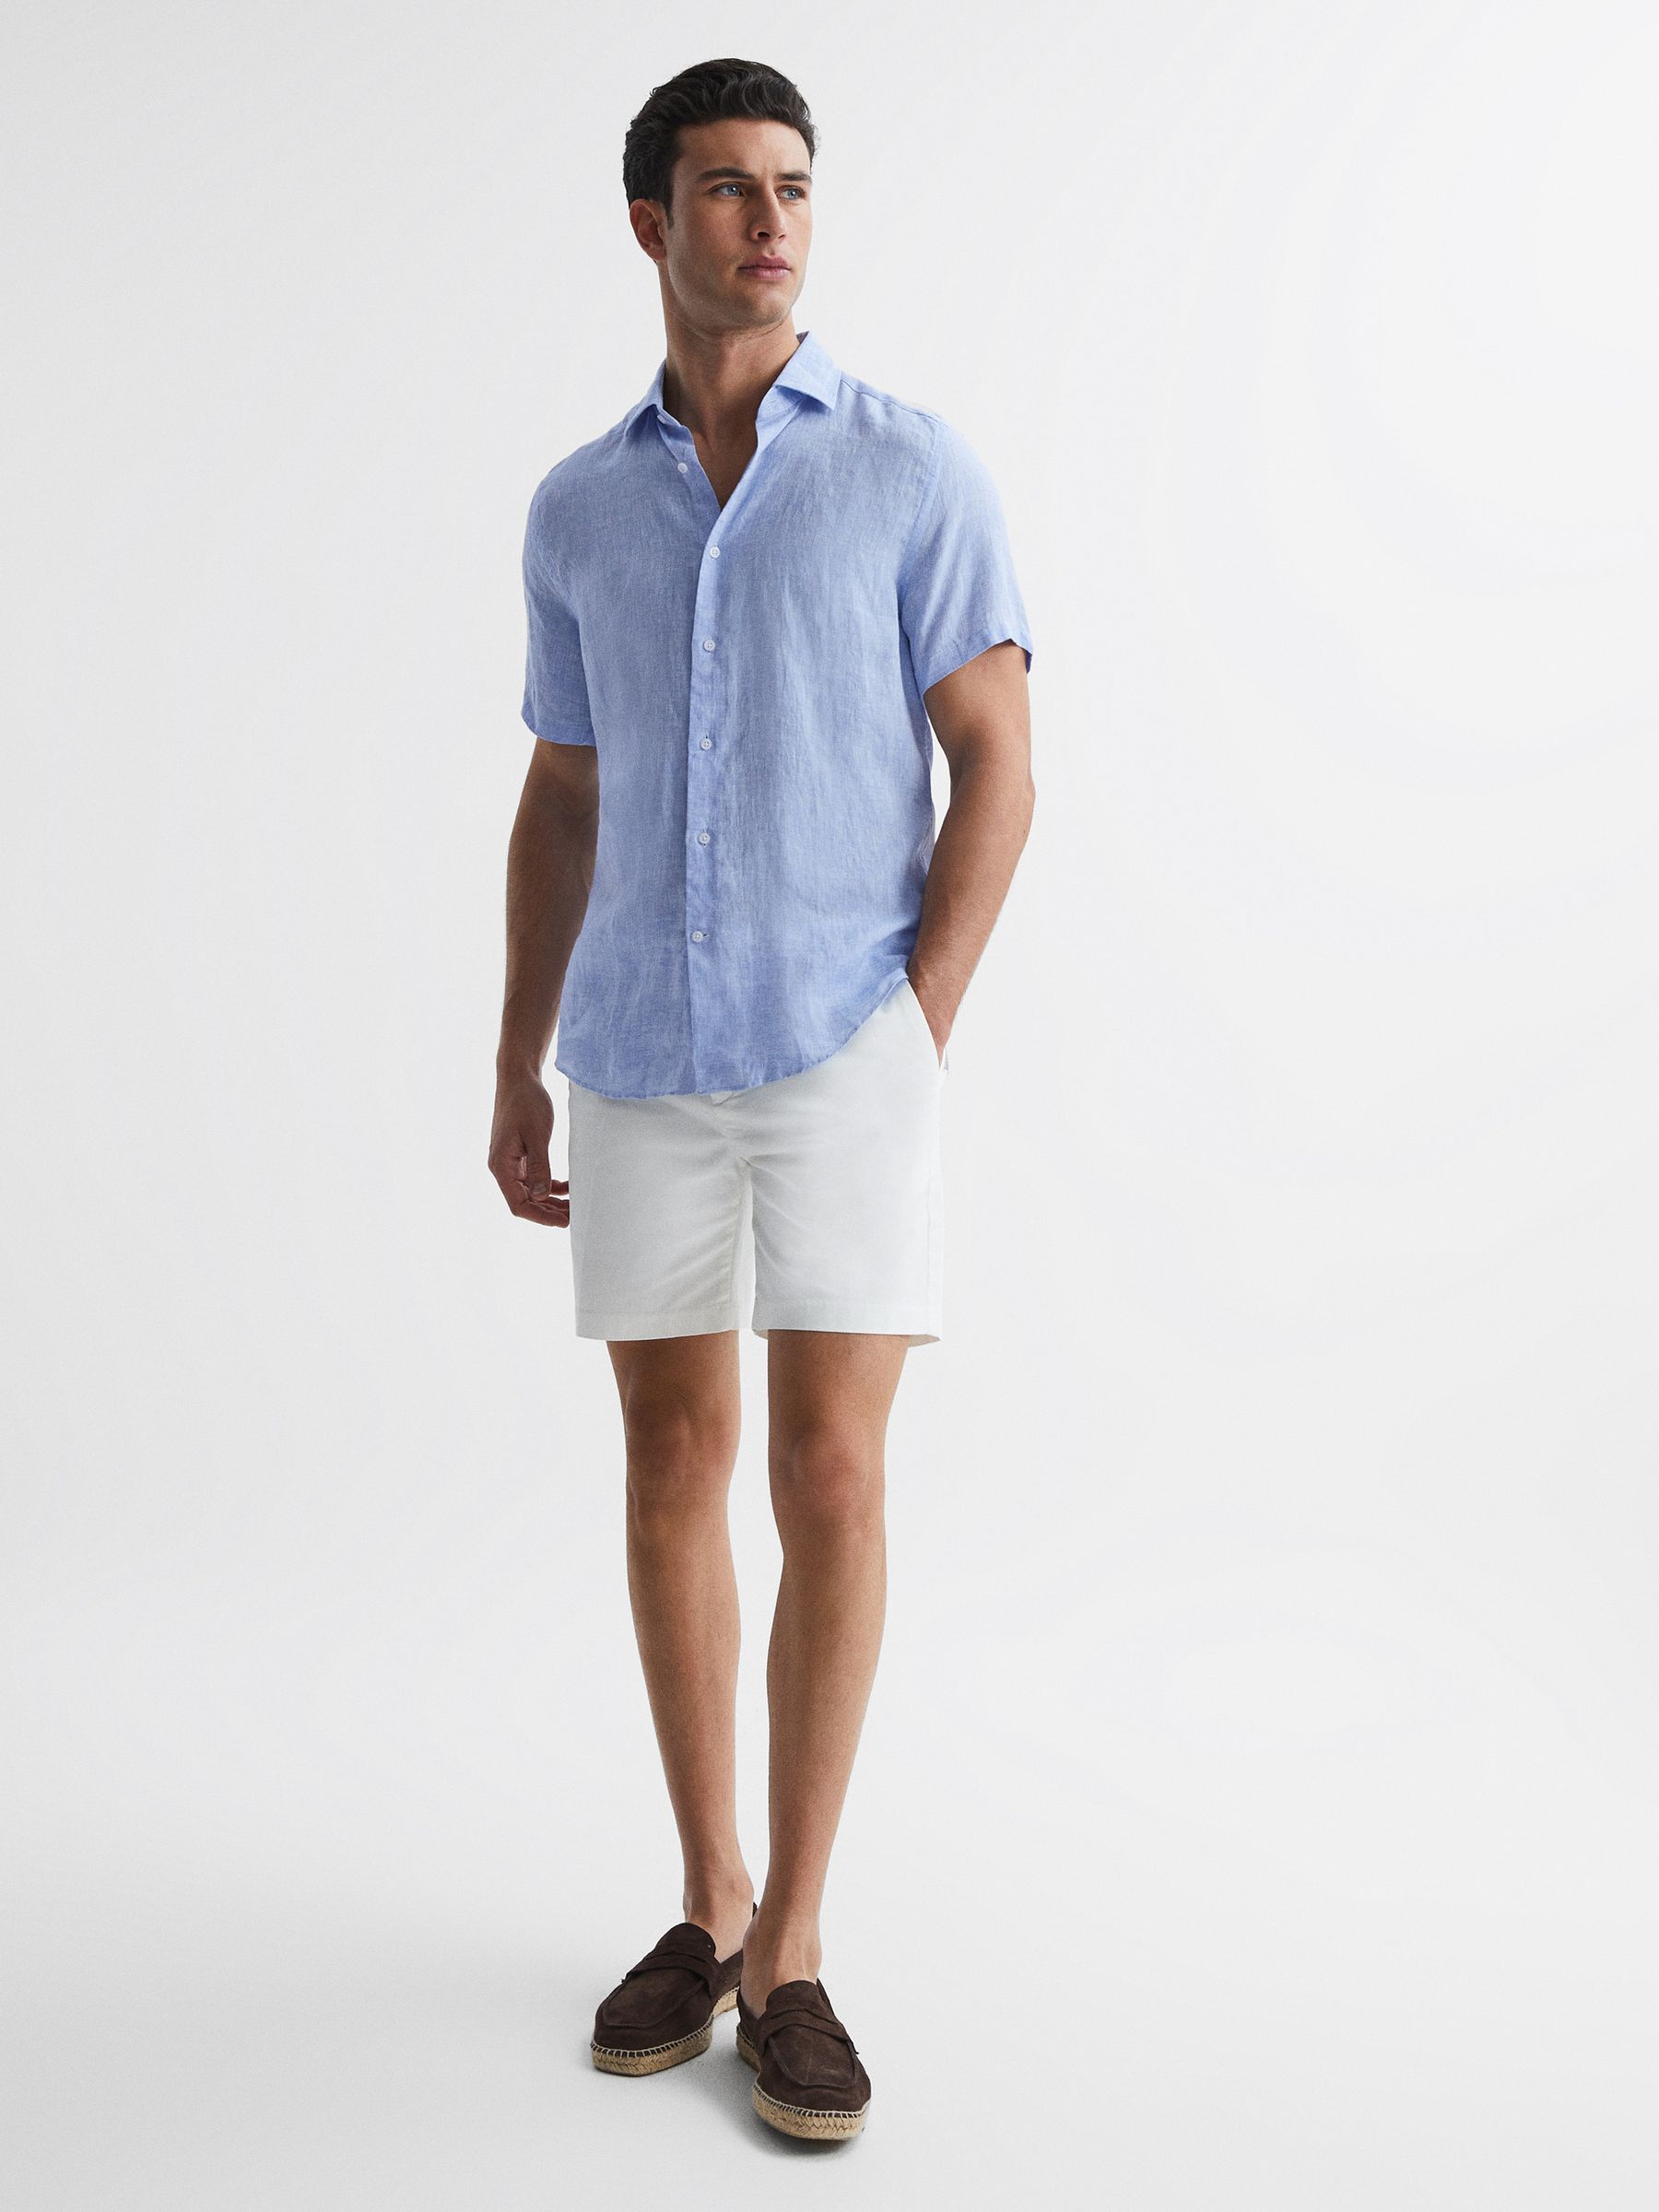 Reiss Holiday Slim Fit Linen Button-Through Shirt - REISS